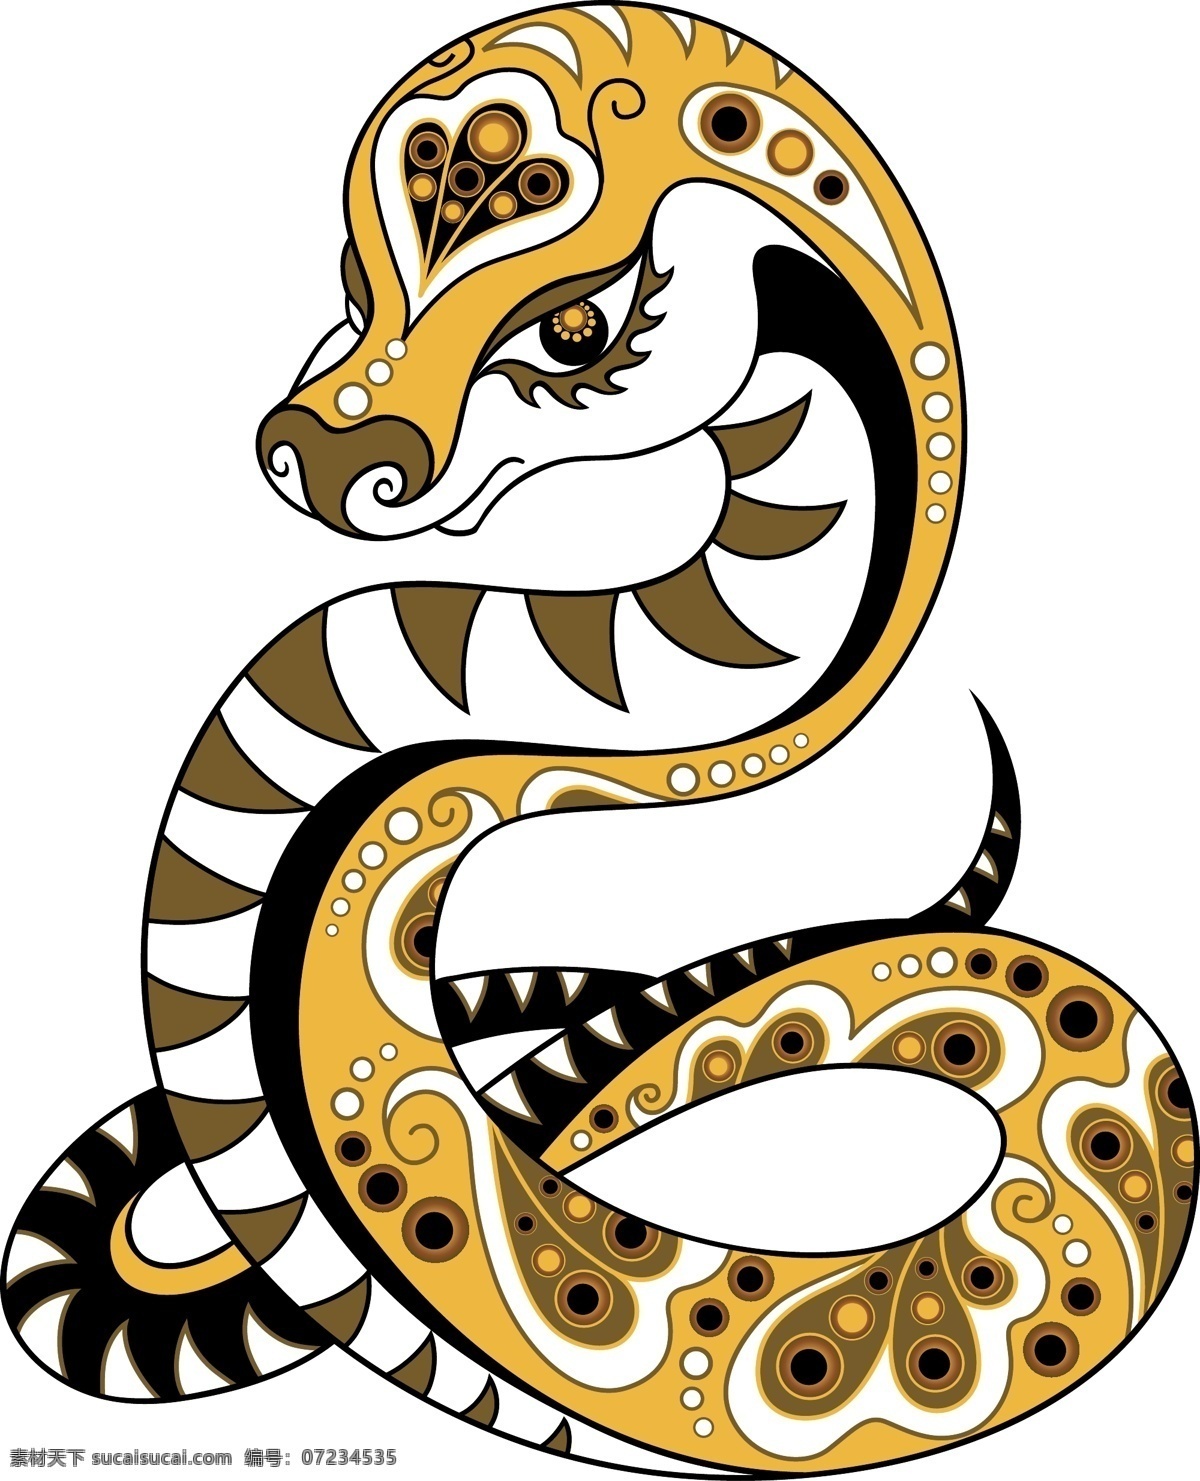 花纹 蛇 图案 插画 蛇年 生肖 矢量素材 图形 矢量图 其他矢量图